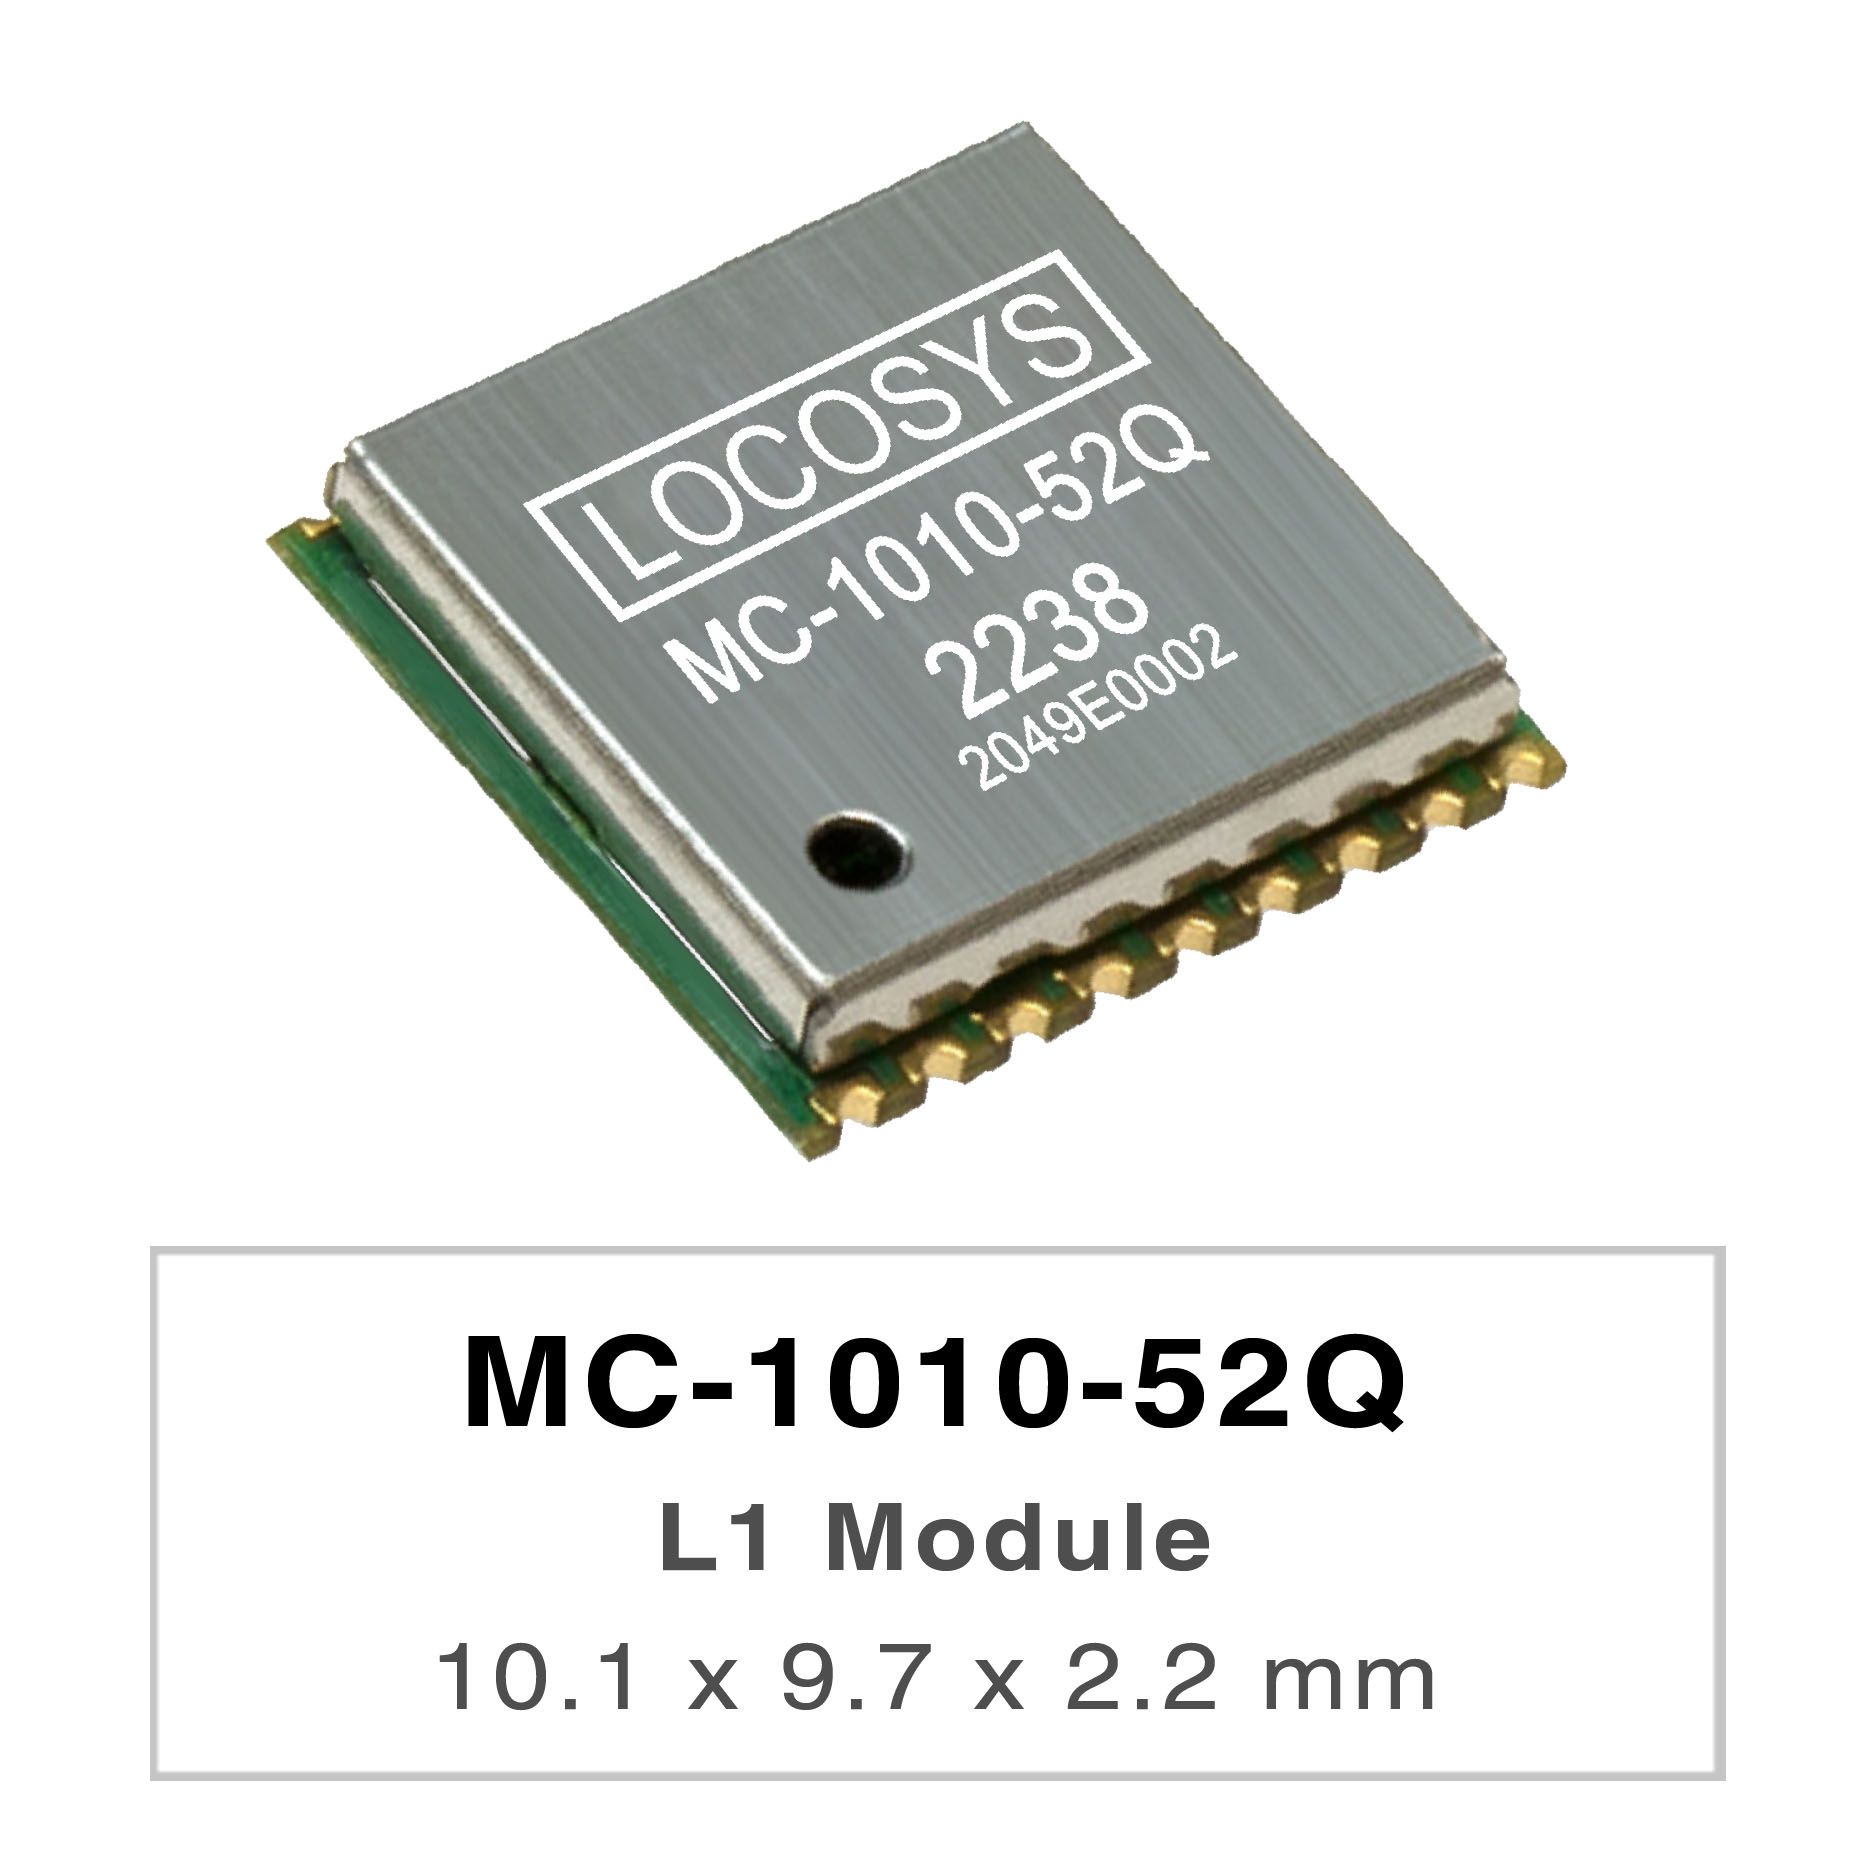 LOCOSYS MC-1010-52Qは完全なスタンドアロンGNSSモジュールです。